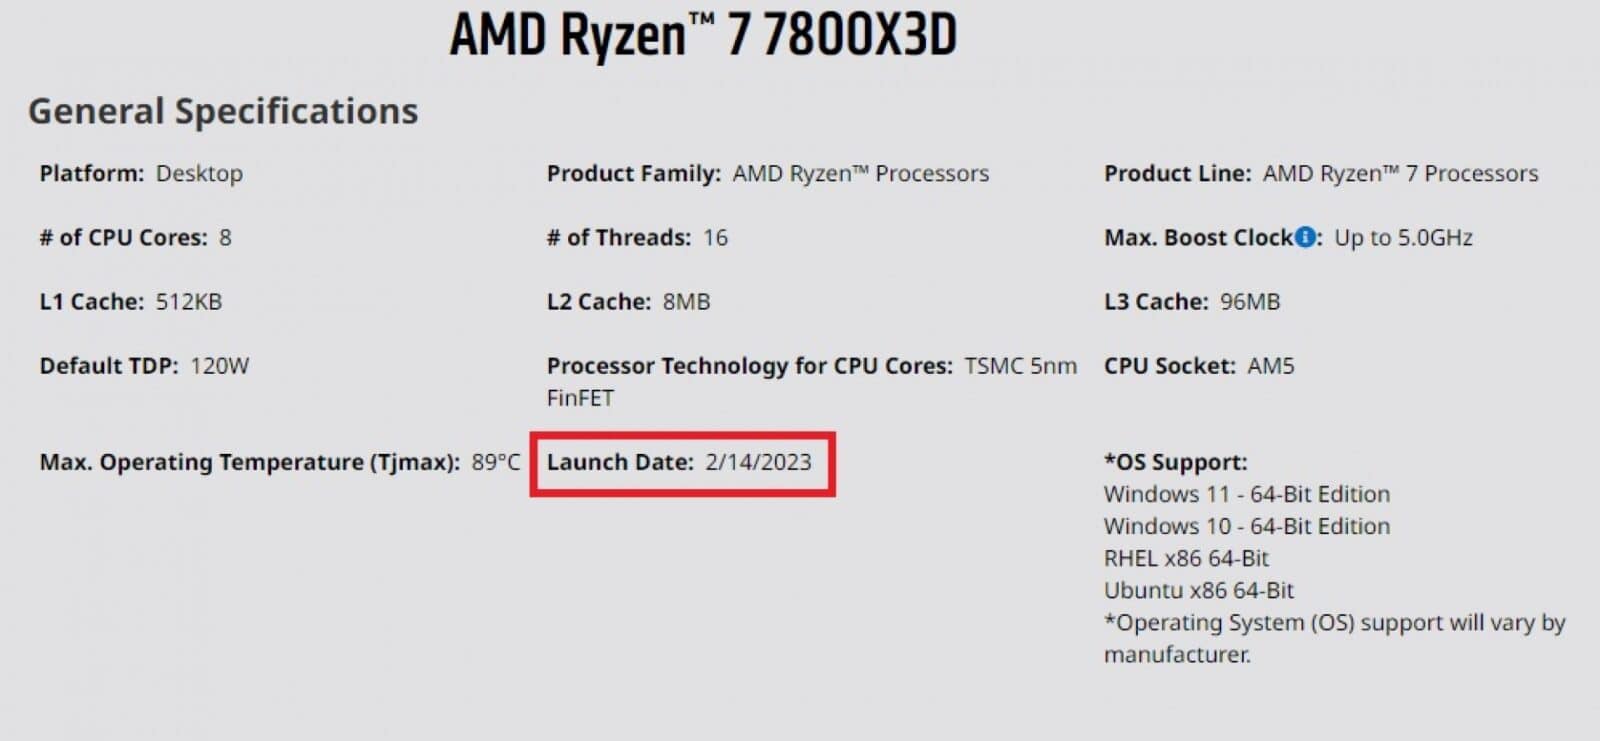 AMD Ryzen 7000 X3D 3D V Cache CPUs Launch Date